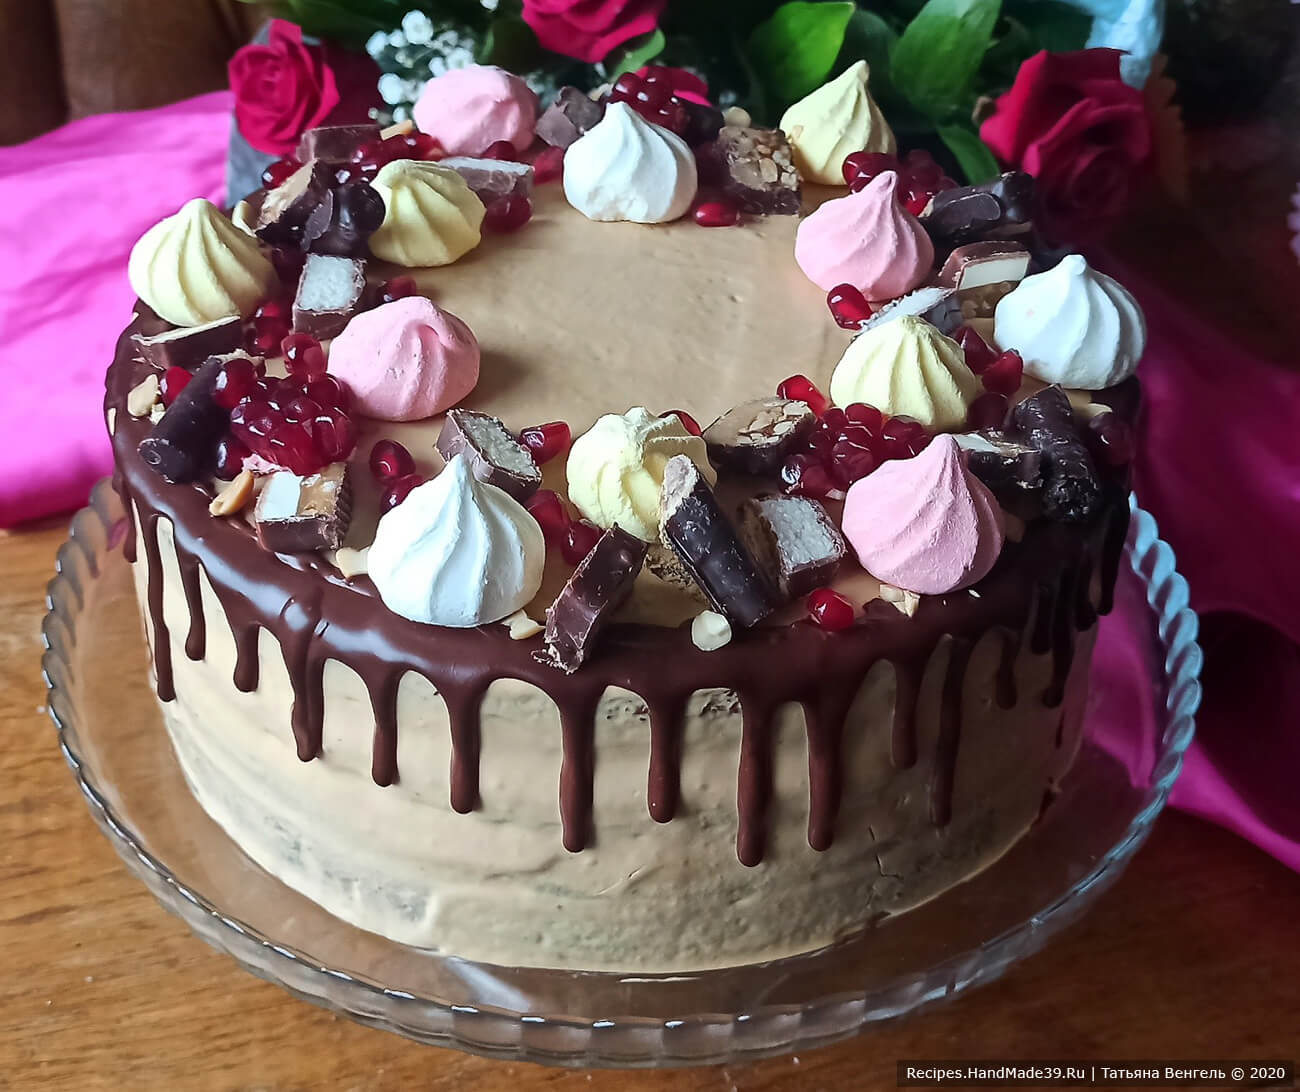 Шоколадный торт на кефире «Фантастика»: идеальный десерт для посиделок с друзьями.